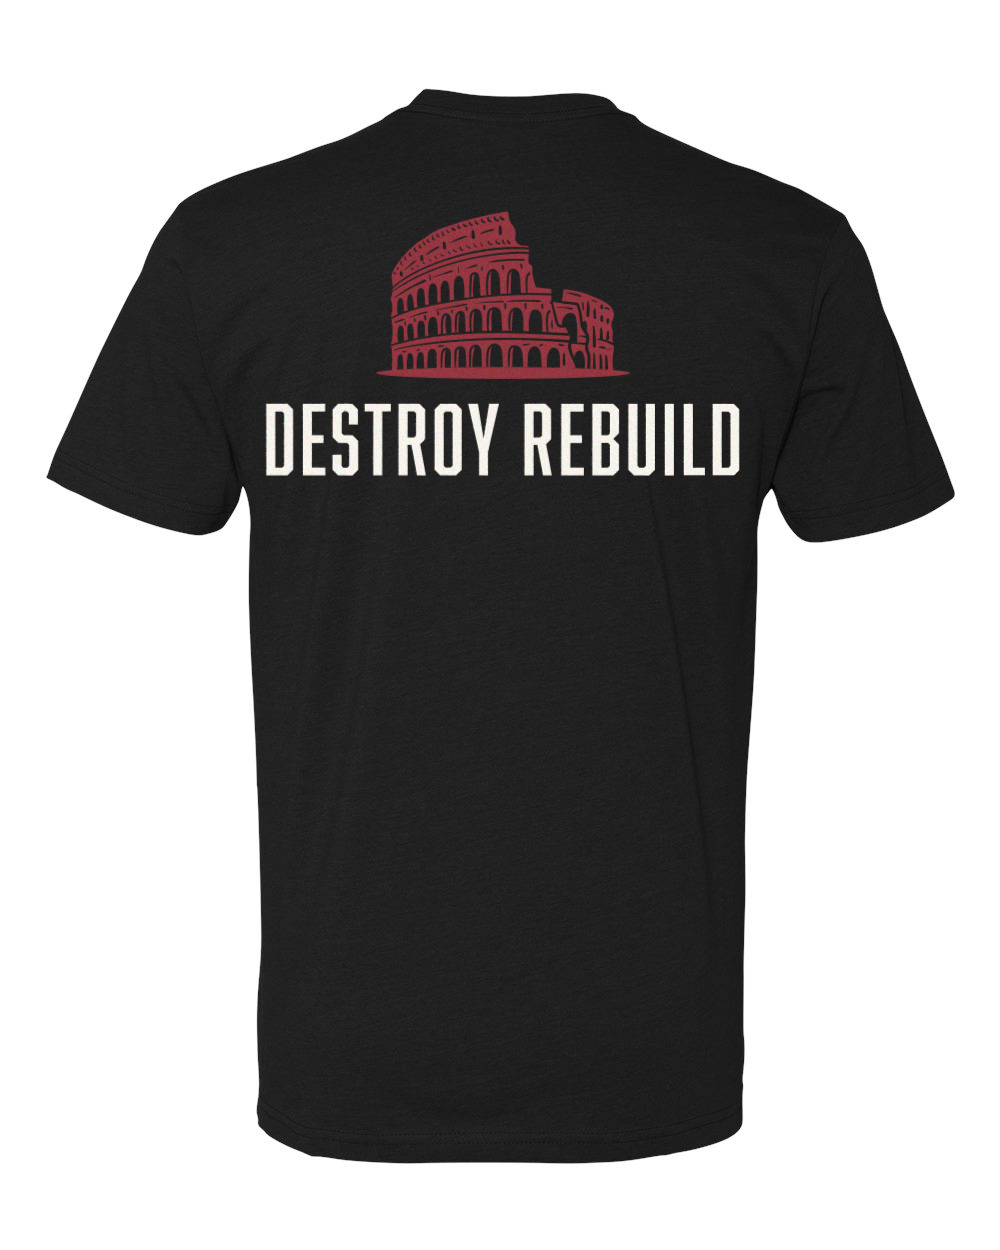 Short sleeve black shirt with Destroy Rebuild logo on back..